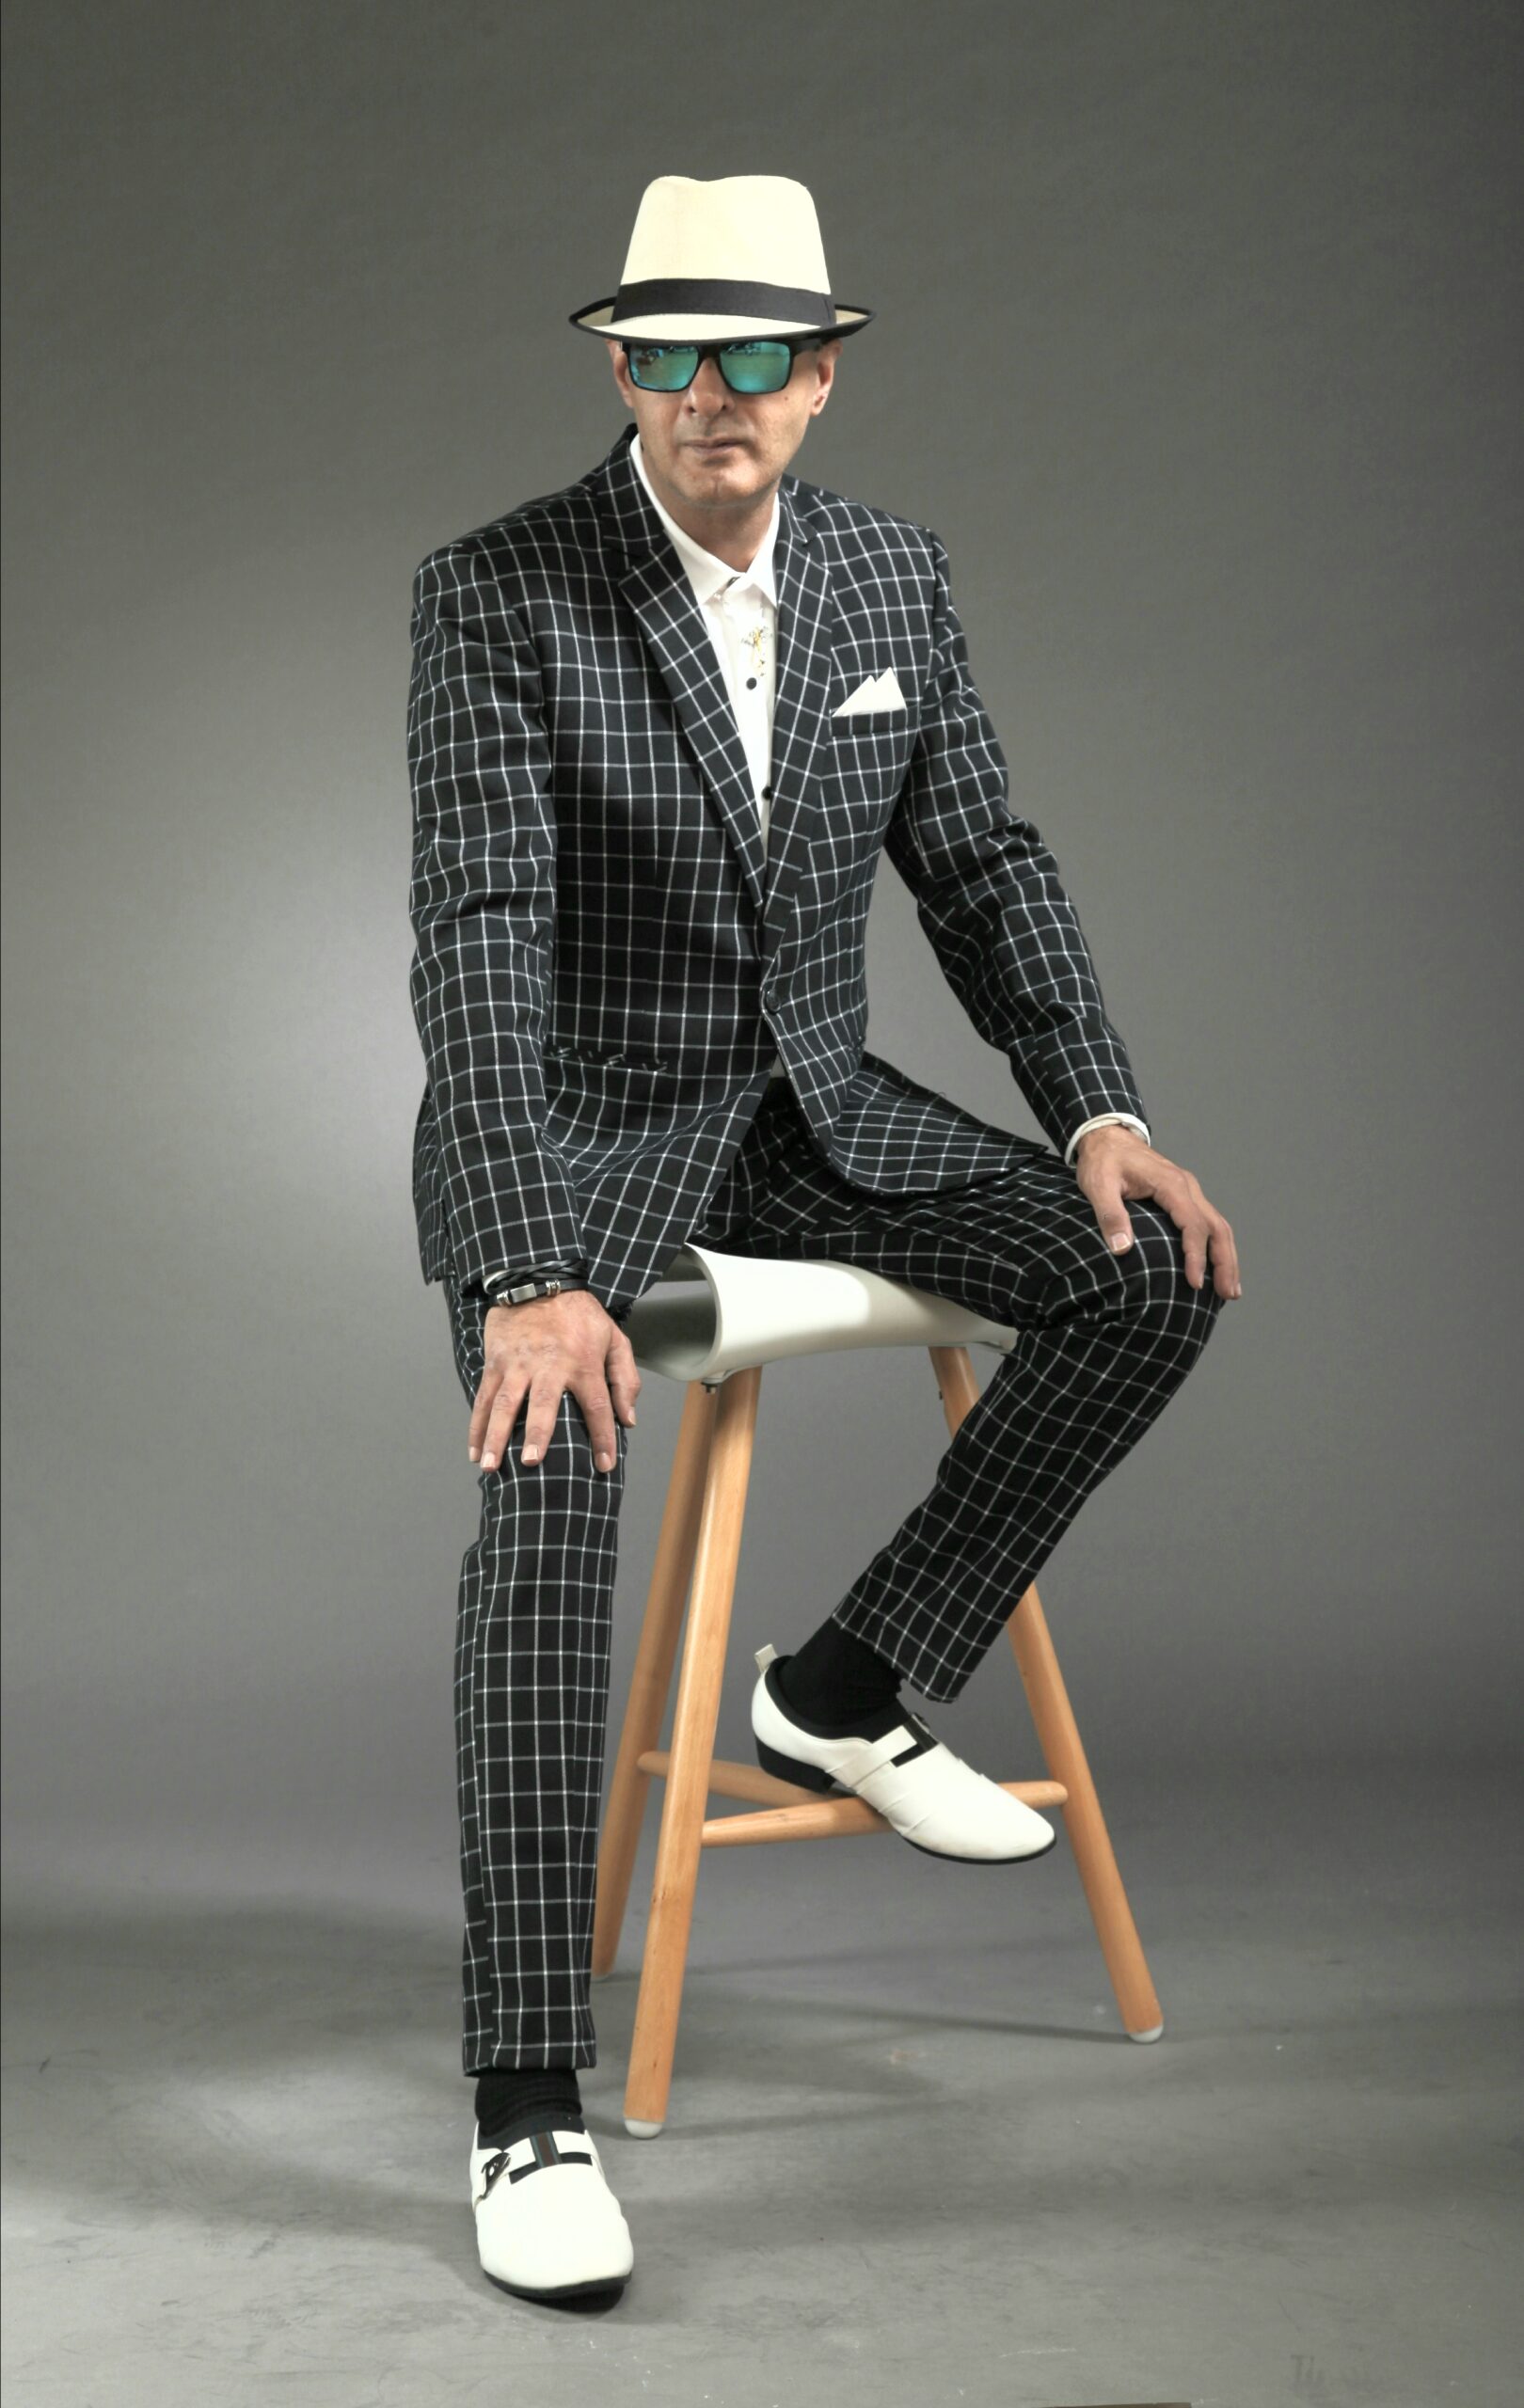 Mst 5008 01 Rent Rental Hire Tuxedo Suit Black Tie Suit Designer Suits Shop Tailor Tailors Singapore Wedding